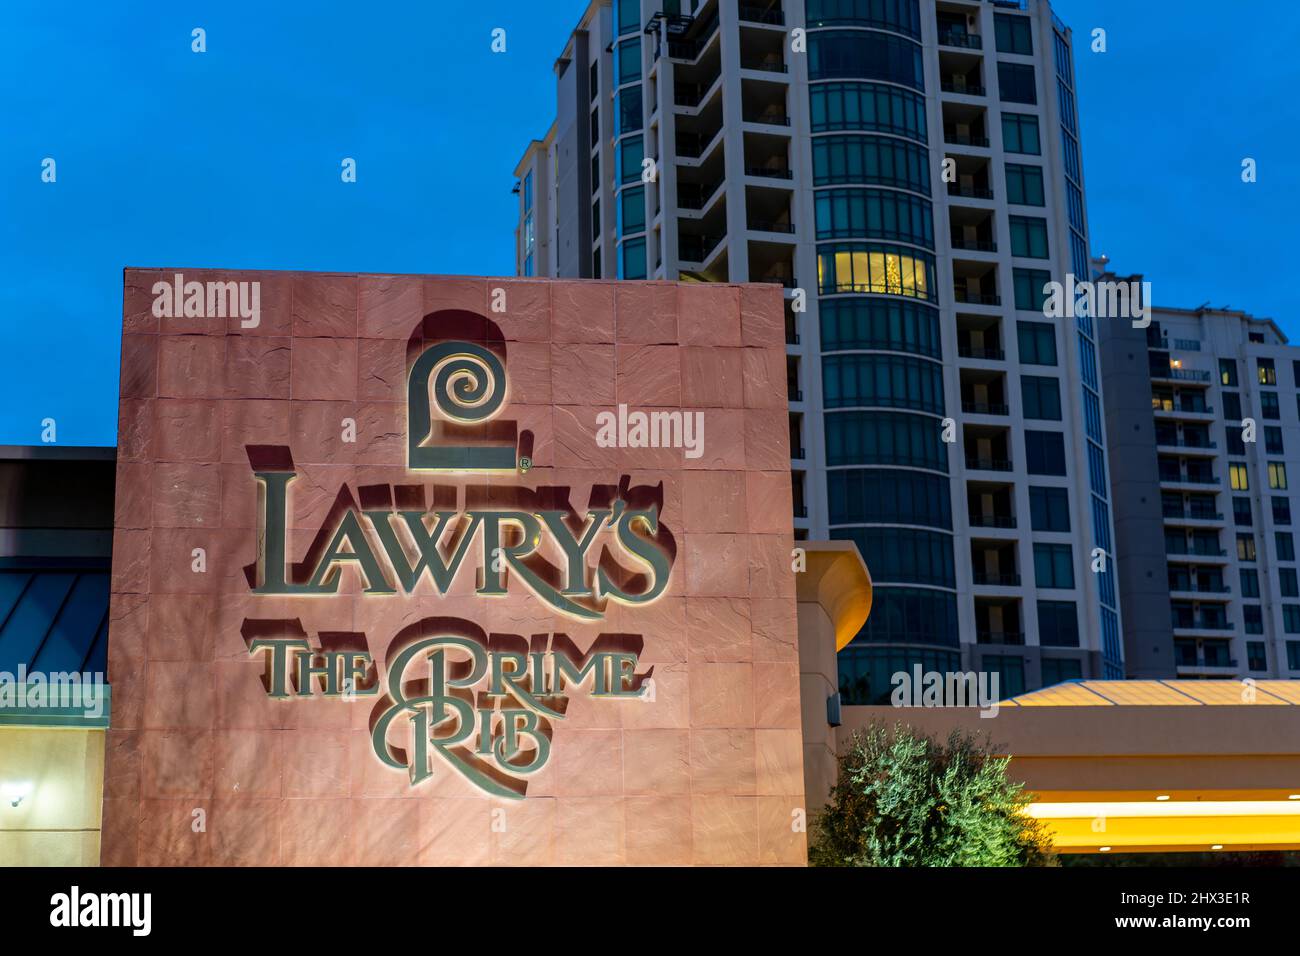 Las Vegas, NV - 16 décembre 2021 : façade du restaurant Lawry's The Prime Rib avec le logo « Fanciful L » et marque déposée de Saul Bass. Banque D'Images